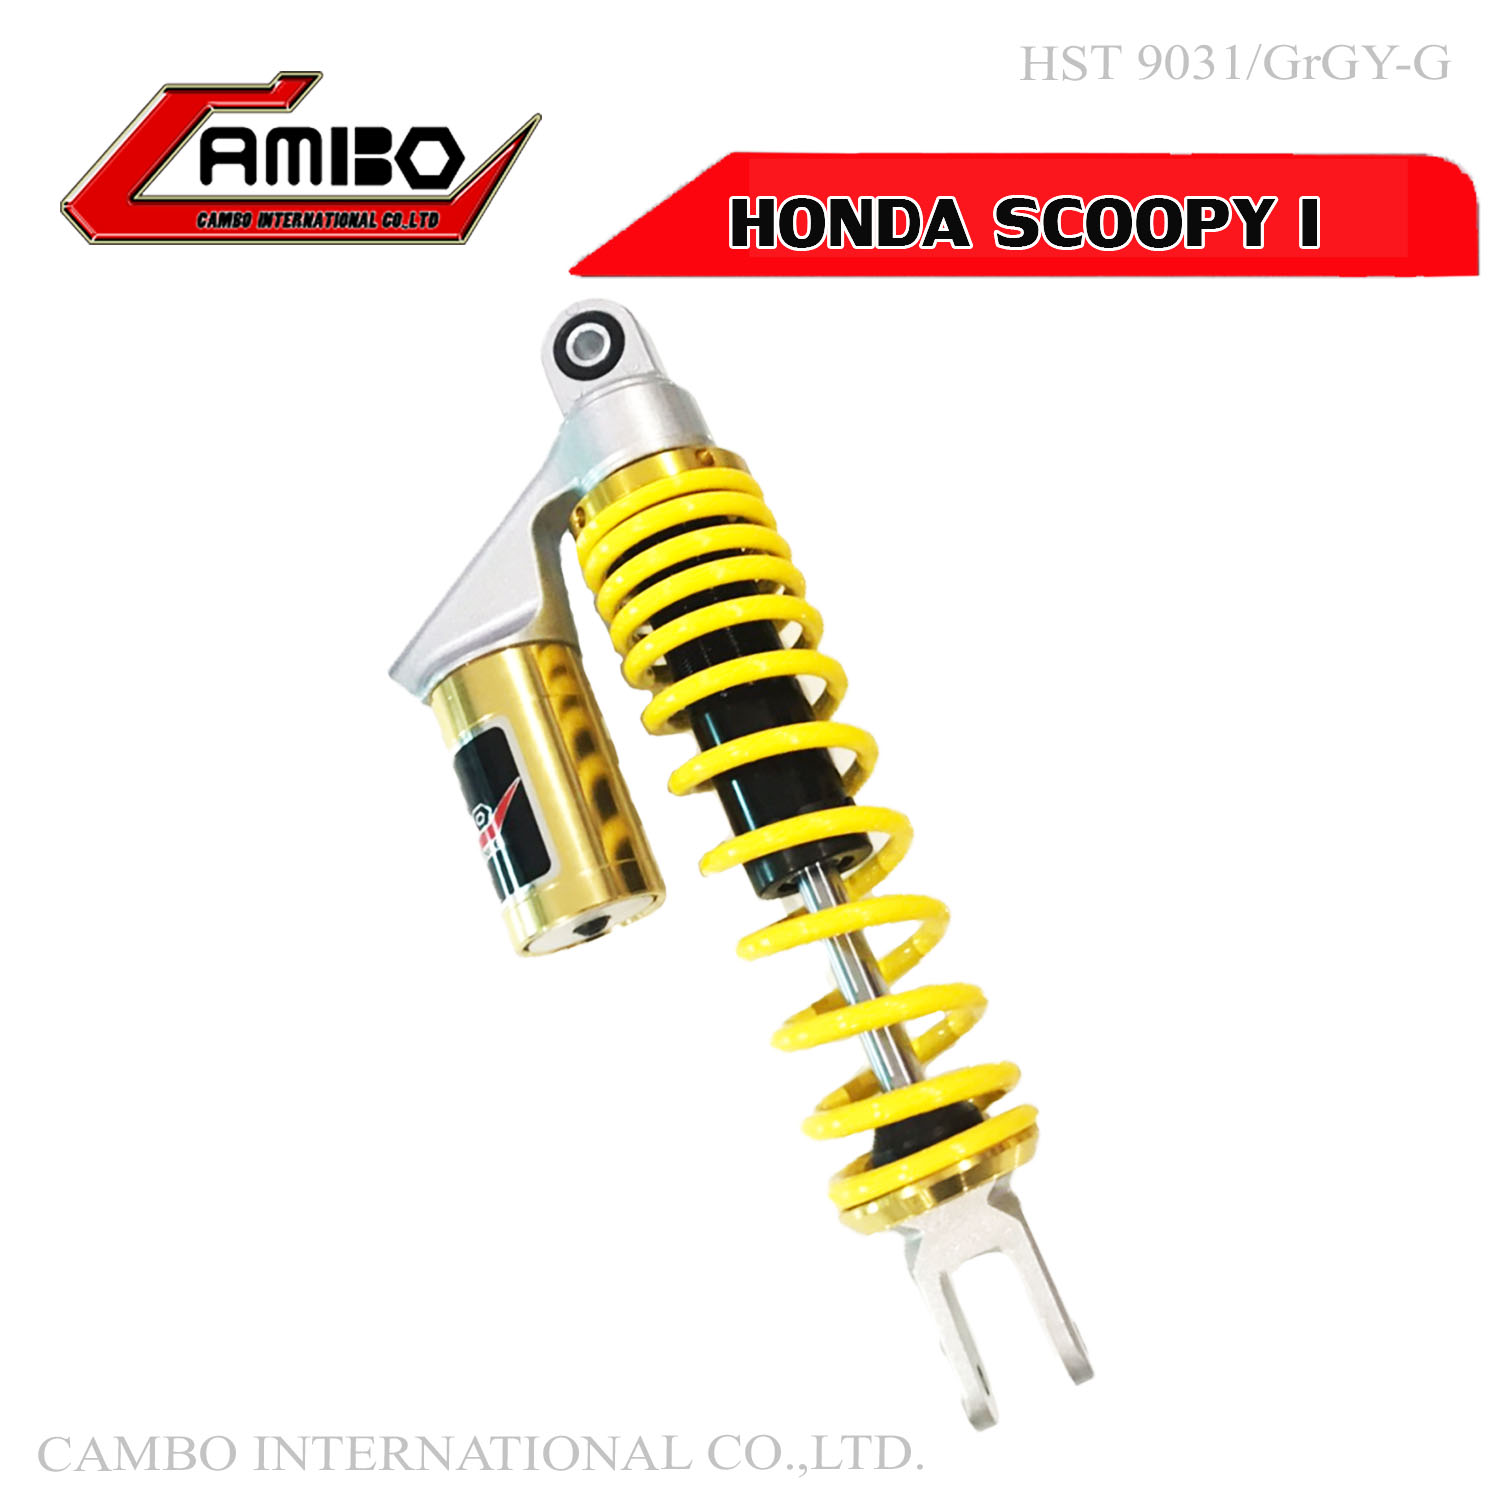 โช๊คหลัง Honda SCOOPY I ฮอนด้า สกูปปี้ไอ ระบบแก๊ส มีกระบอกซับแทงค์ ยาว 300 มิล สีเหลืองทอง (HST 9031/GrSiY-G)